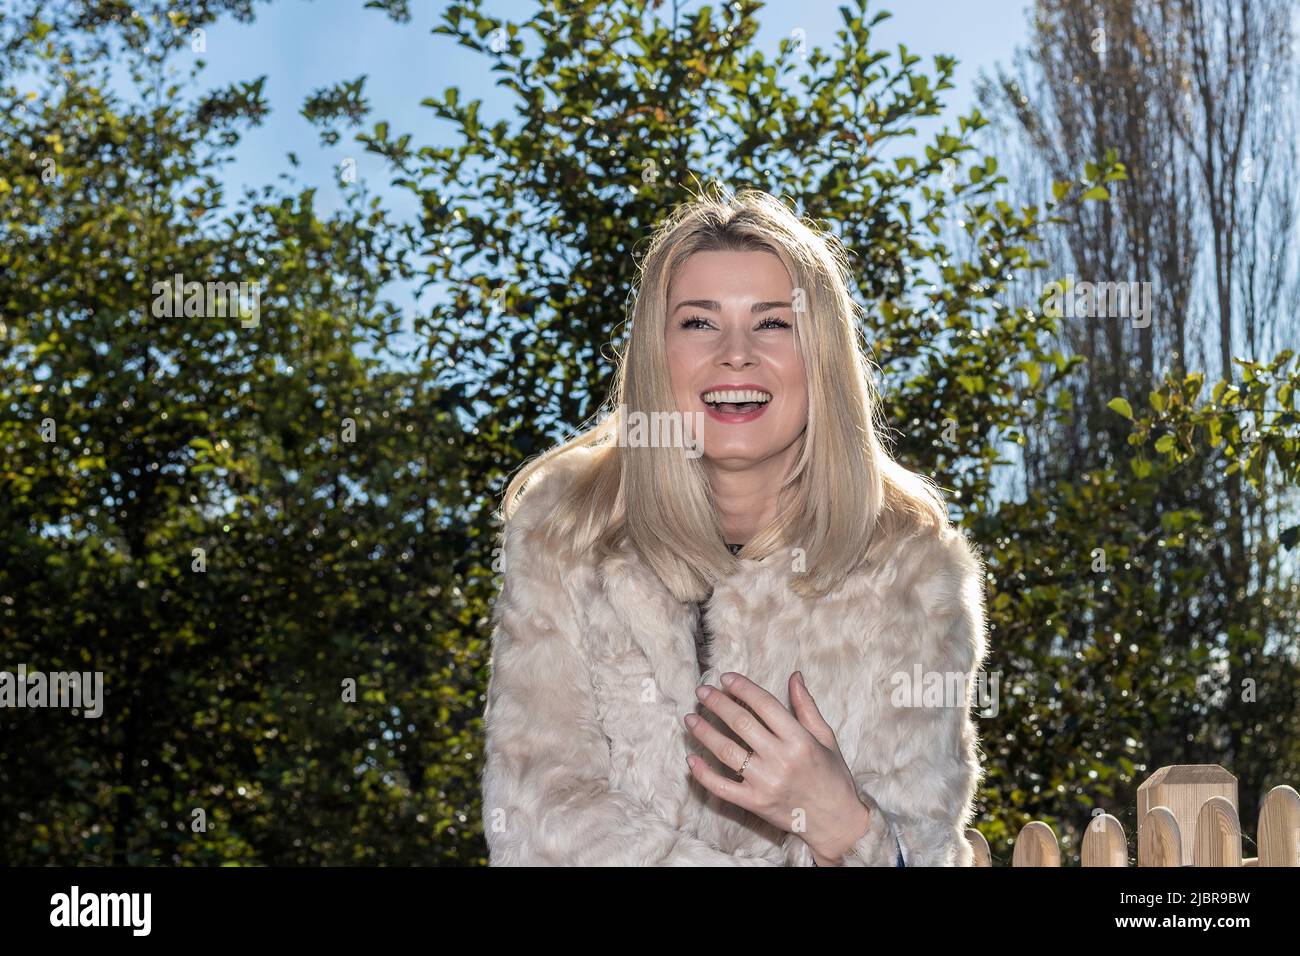 belle femme blonde riant joyeusement dans un parc lors d'une belle journée d'hiver Banque D'Images